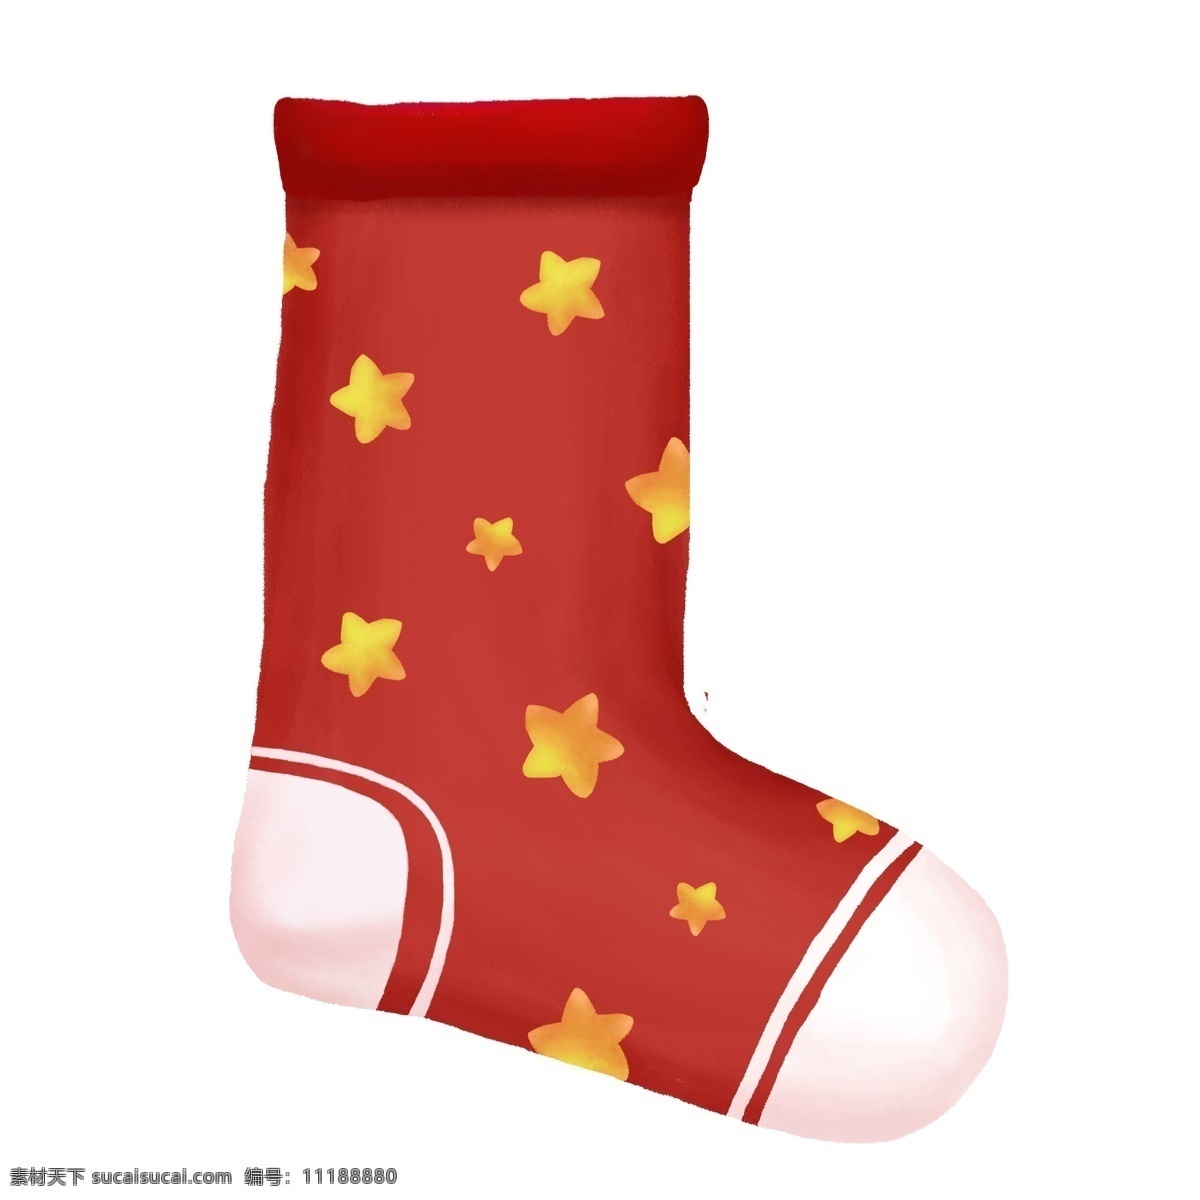 圣诞 节日 礼物 袜子 圣诞袜 圣诞节 圣诞元素 红袜子